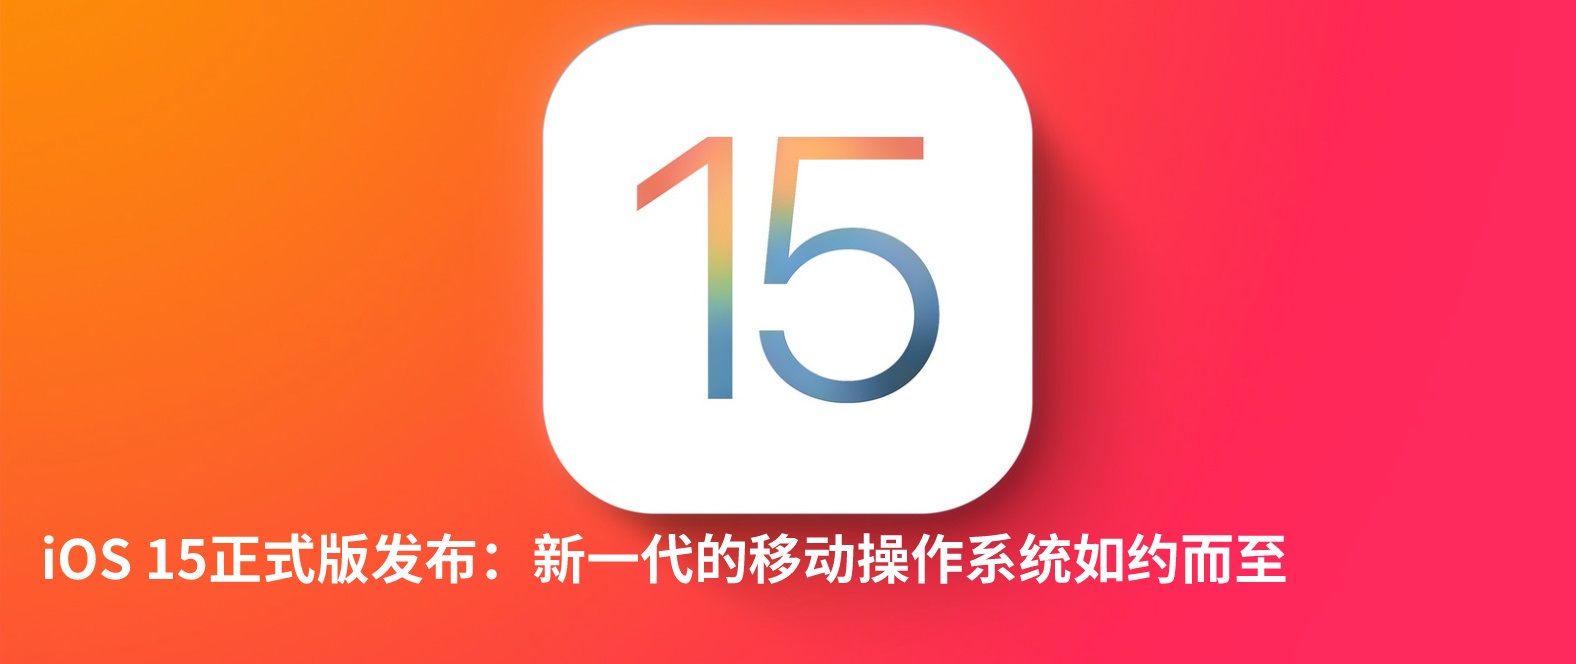 iOS15正式版有什么新功能 ios15正式版有什么新功能吗